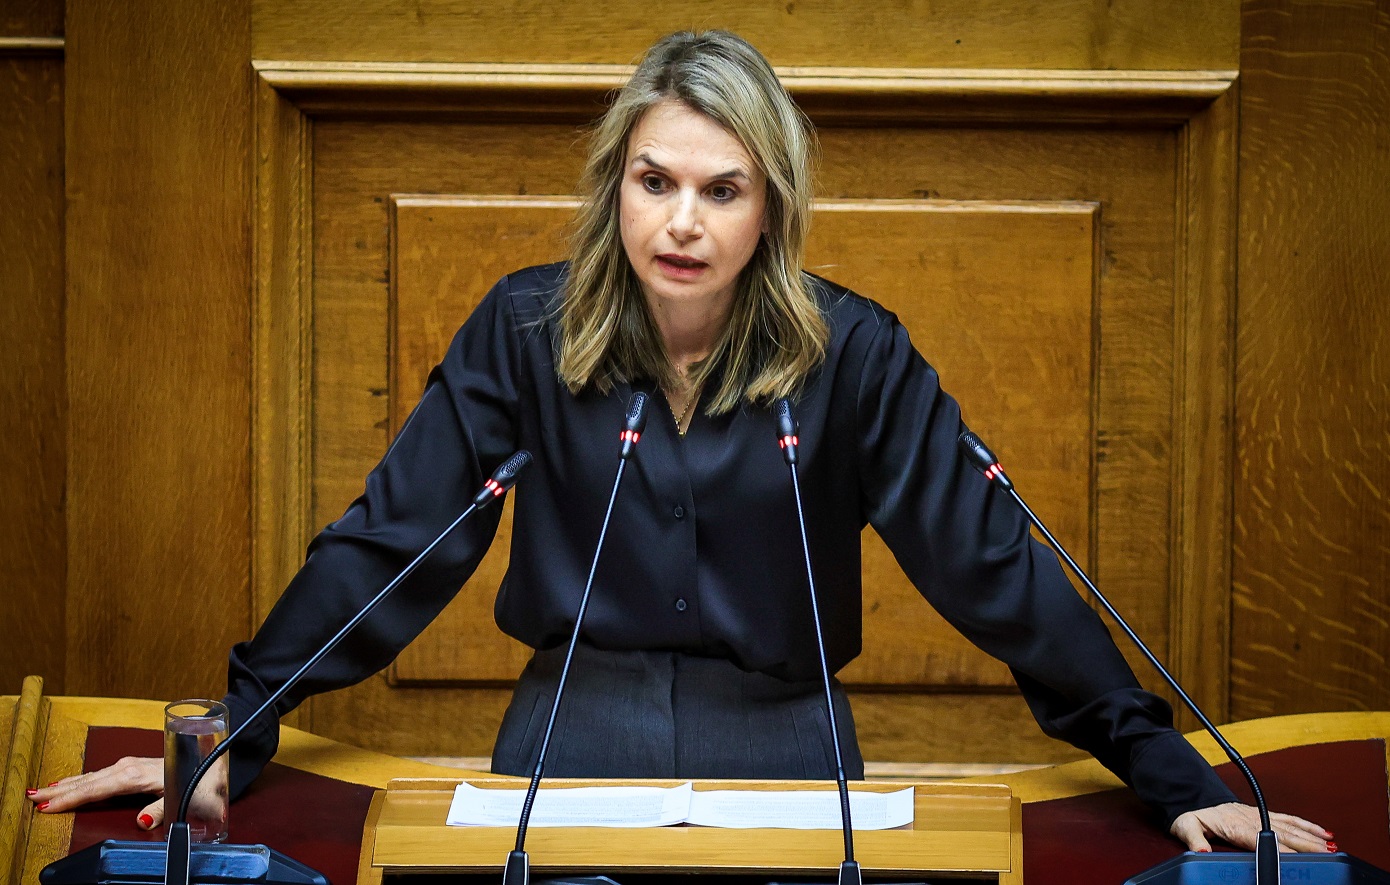 Μιλένα Αποστολάκη: Κατά συρροή και κατ΄εξακολούθηση παραβίαση του κράτους δικαίου